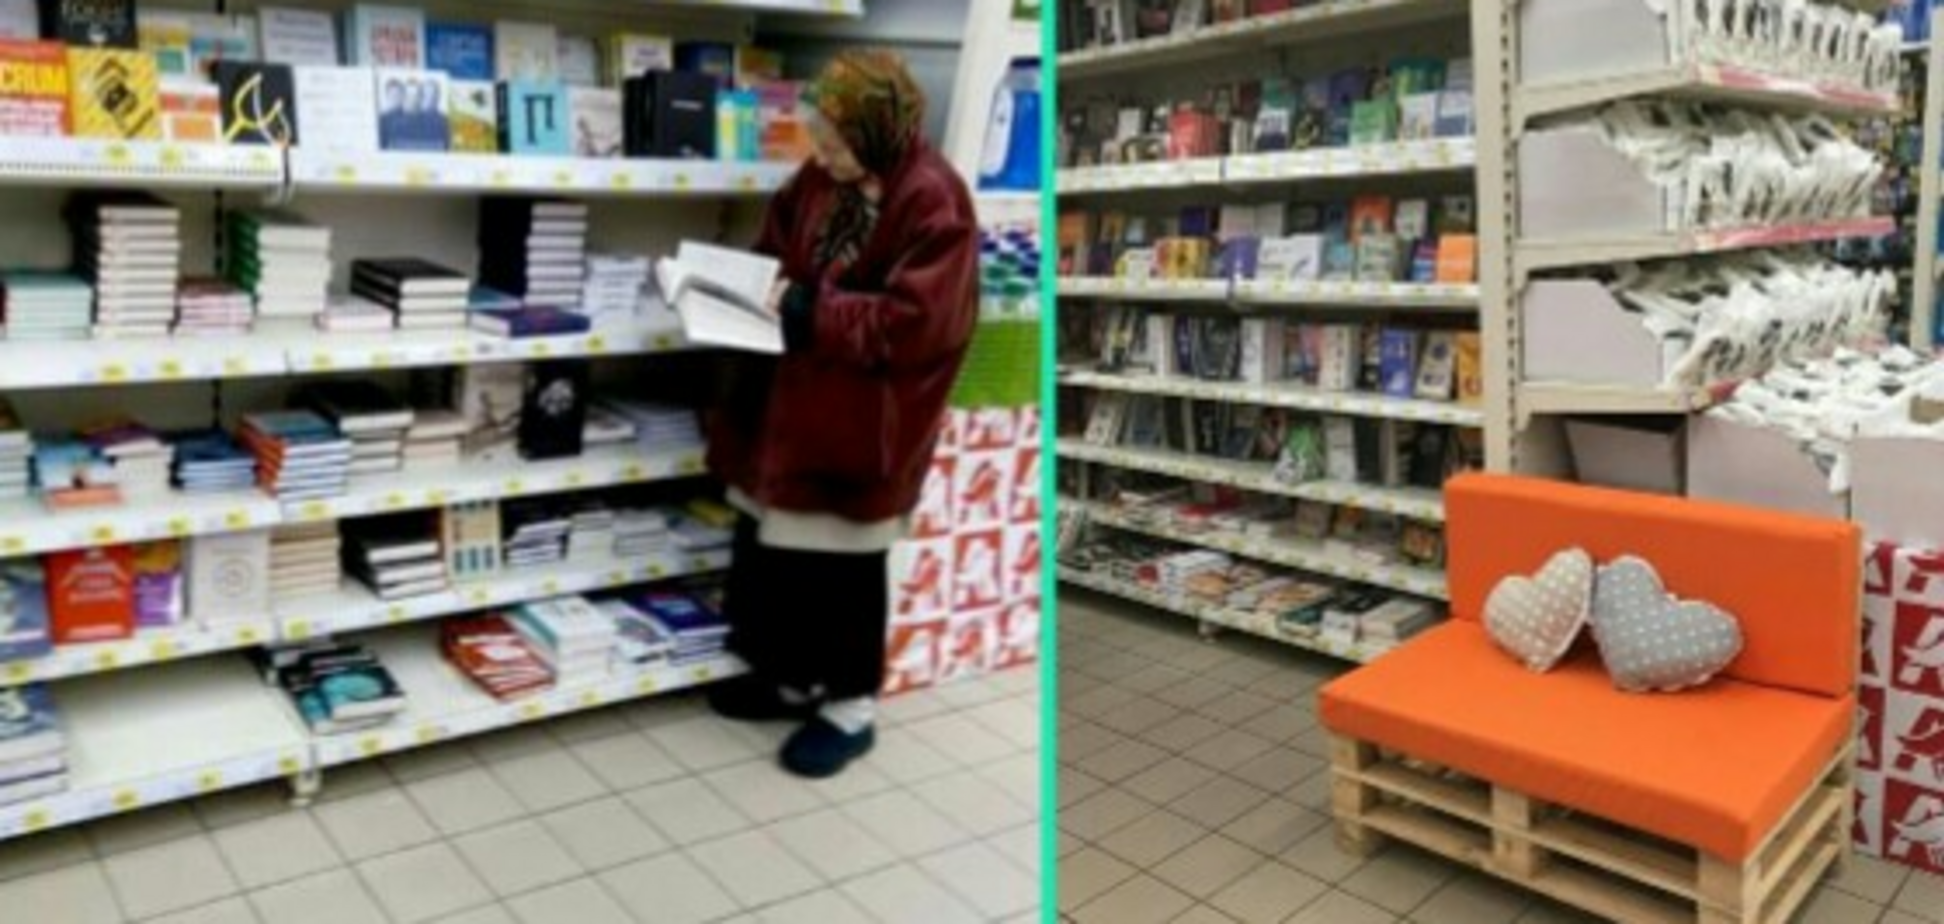 Історія з бабусею, що читає у супермаркеті Києва, отримала несподіваний поворот